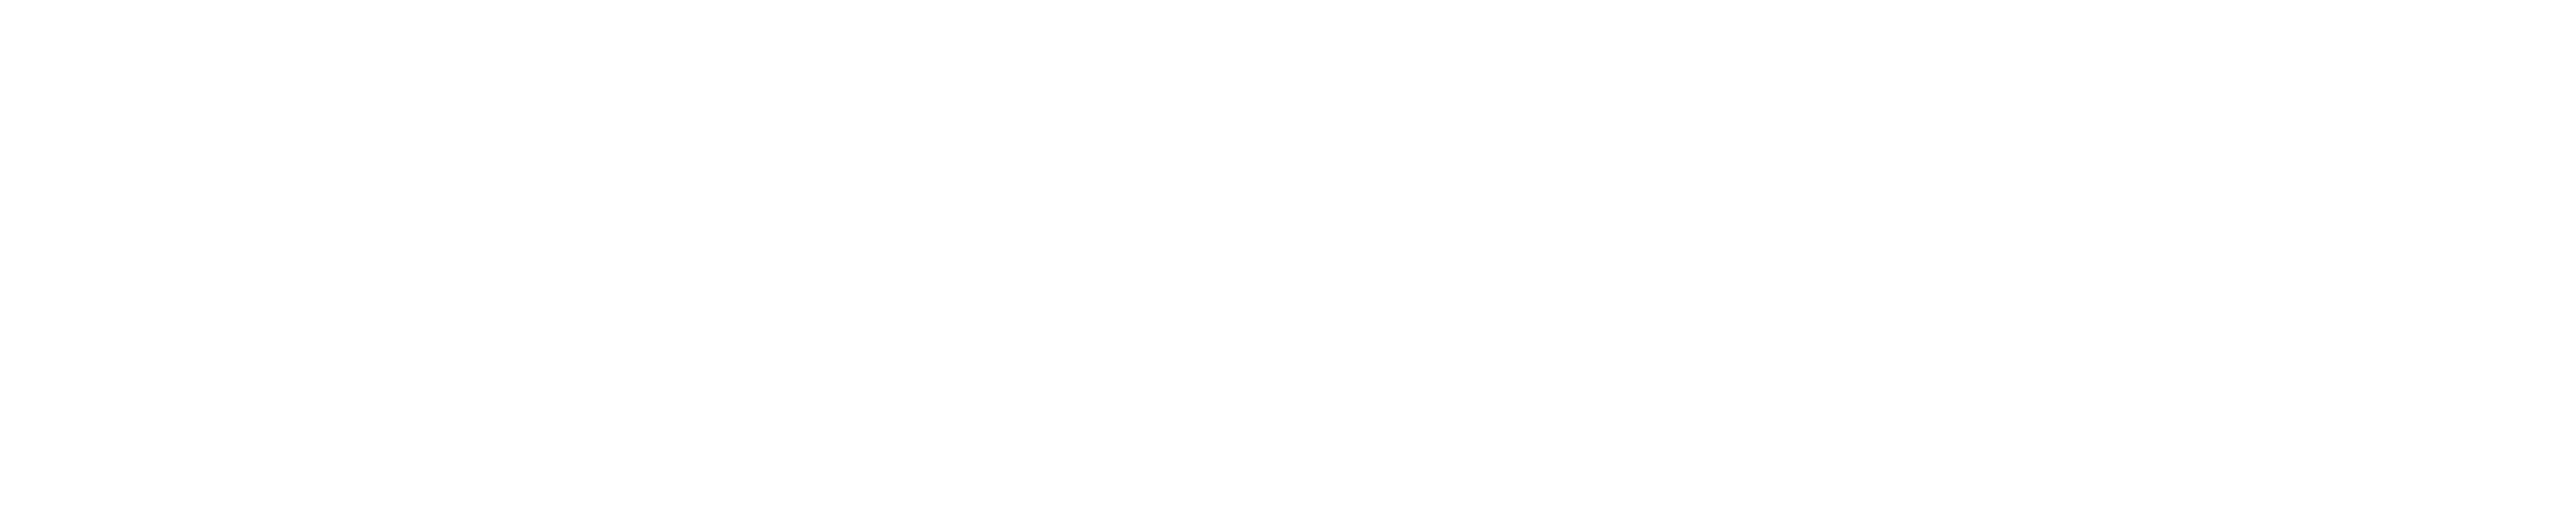 surakshaa-logo